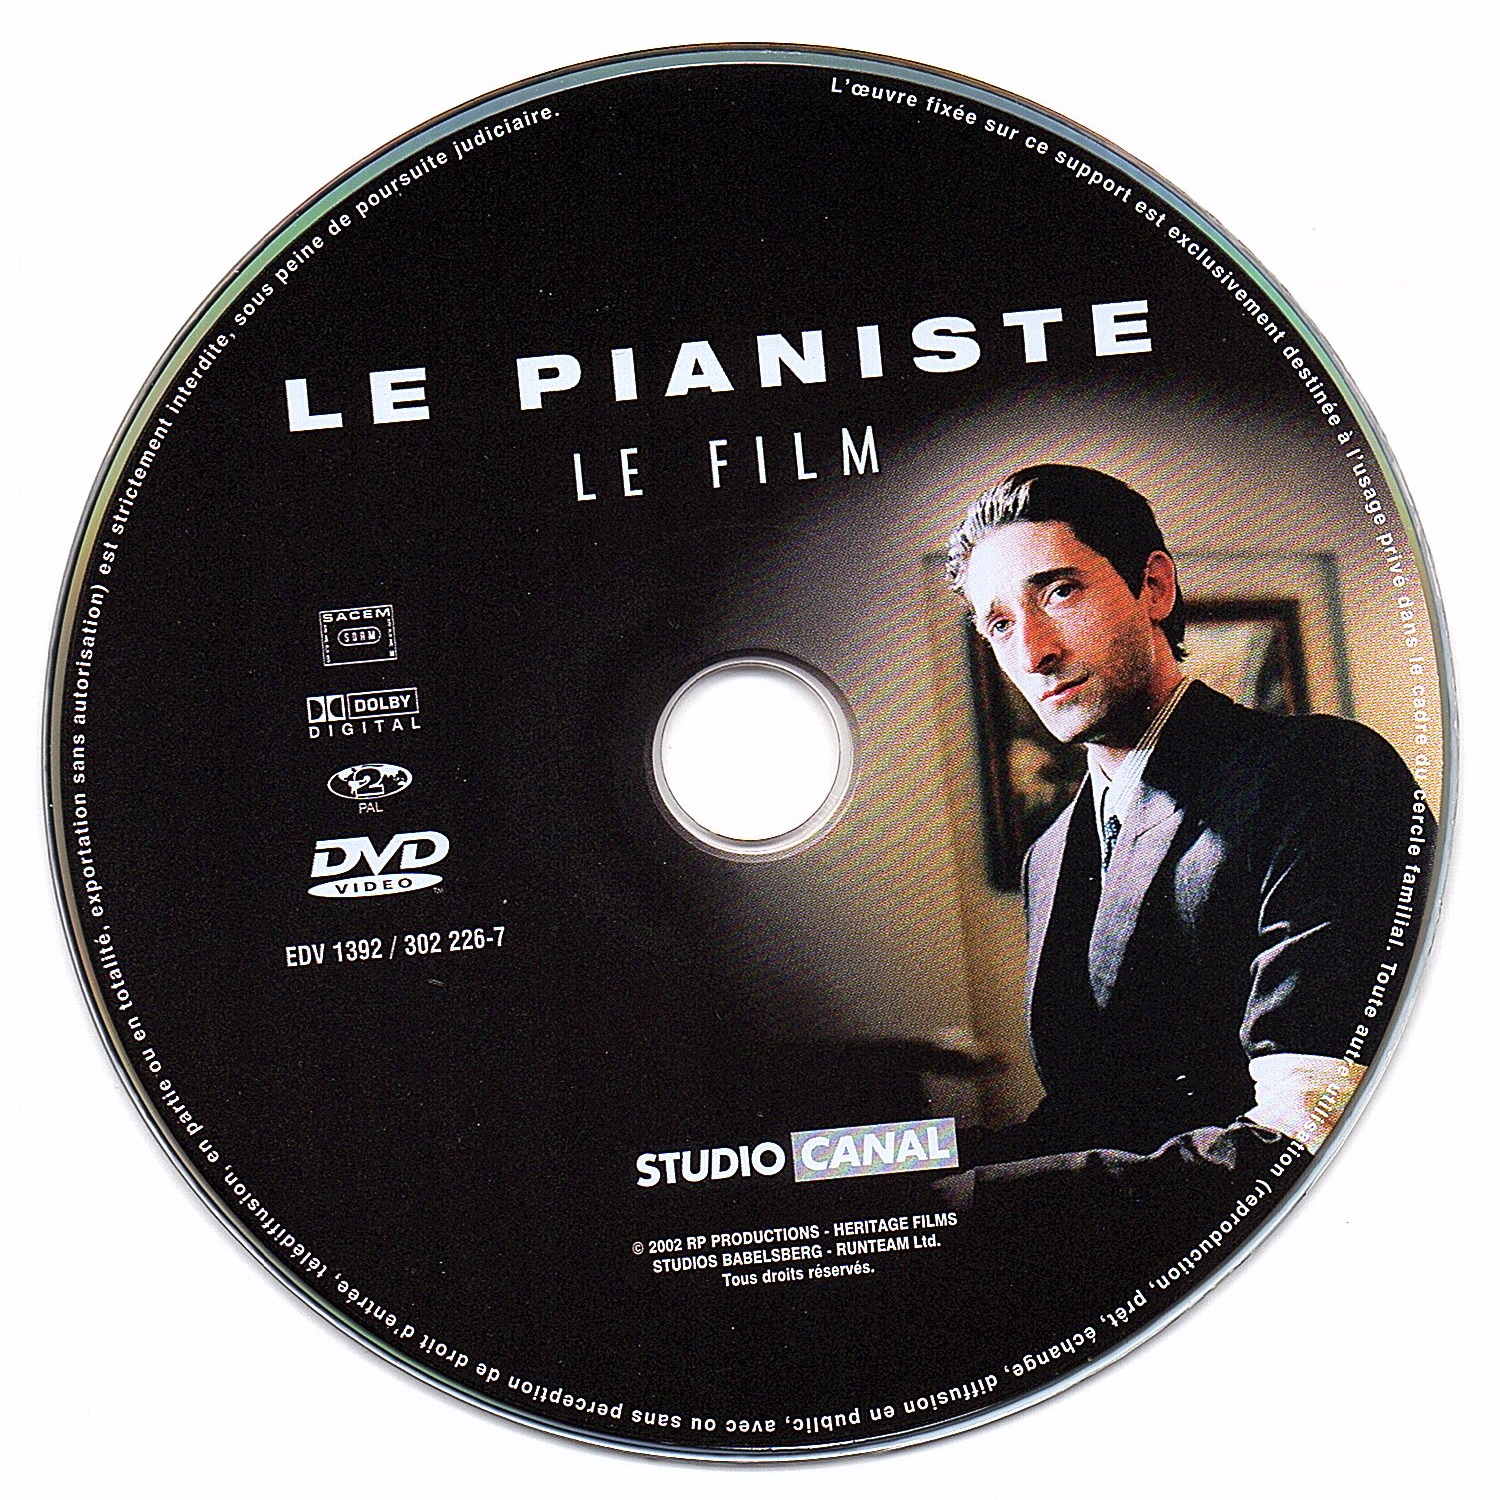 Le pianiste DISC 1